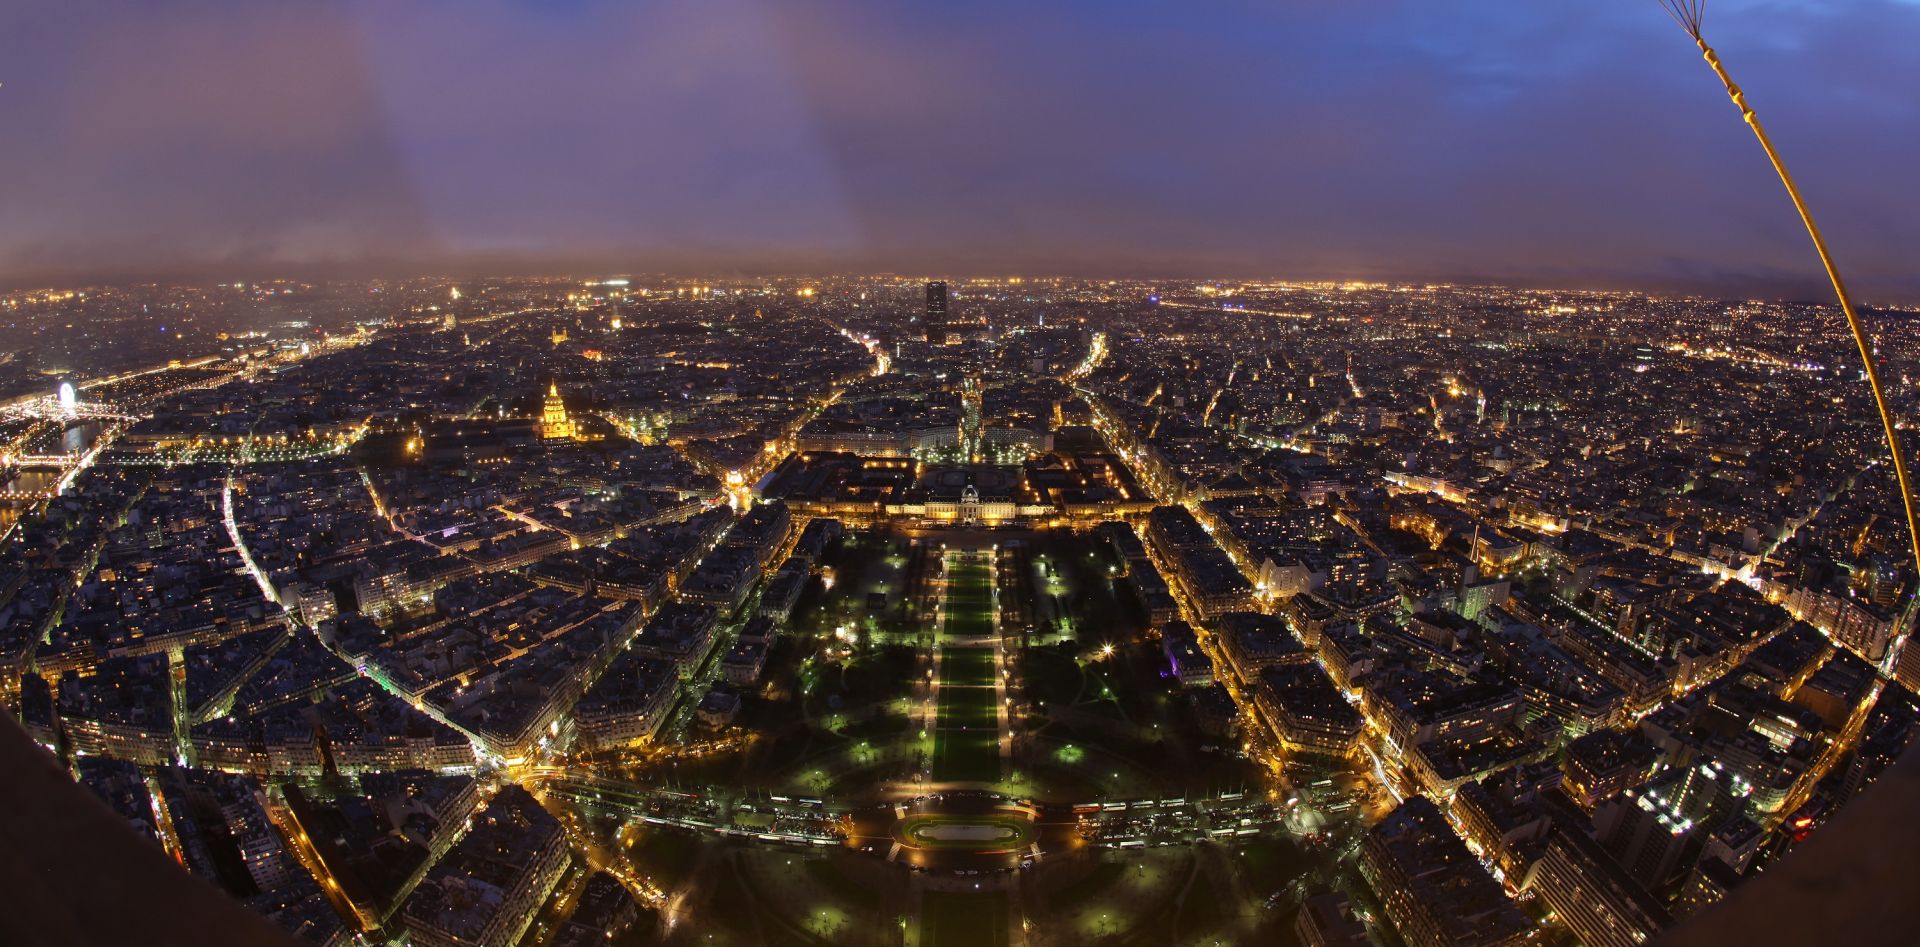 01.01.2012., - Pariz, Francuska - 300 metara visok Eiffelov toranj jedan je od svjetski poznatih simbola Pariza te iznimno jaka turisticka atrakcija na ciju se posjet ceka i do par sati. Sagradjen je 1889. a dobio je ime po inzinjeru Gustavu Eiffelu koji je ga je i projektirao. Kako je toranj smjesten u samom srcu grada Pariza, prostire se panoramski pogled sa svih strana. O velicanstvenosti ove zeljezne gradjevine govori i podatak da u prosjeku dnevno posjeti vise od 18.000 ljudi.
Photo: Filip Brala/PIXSELL